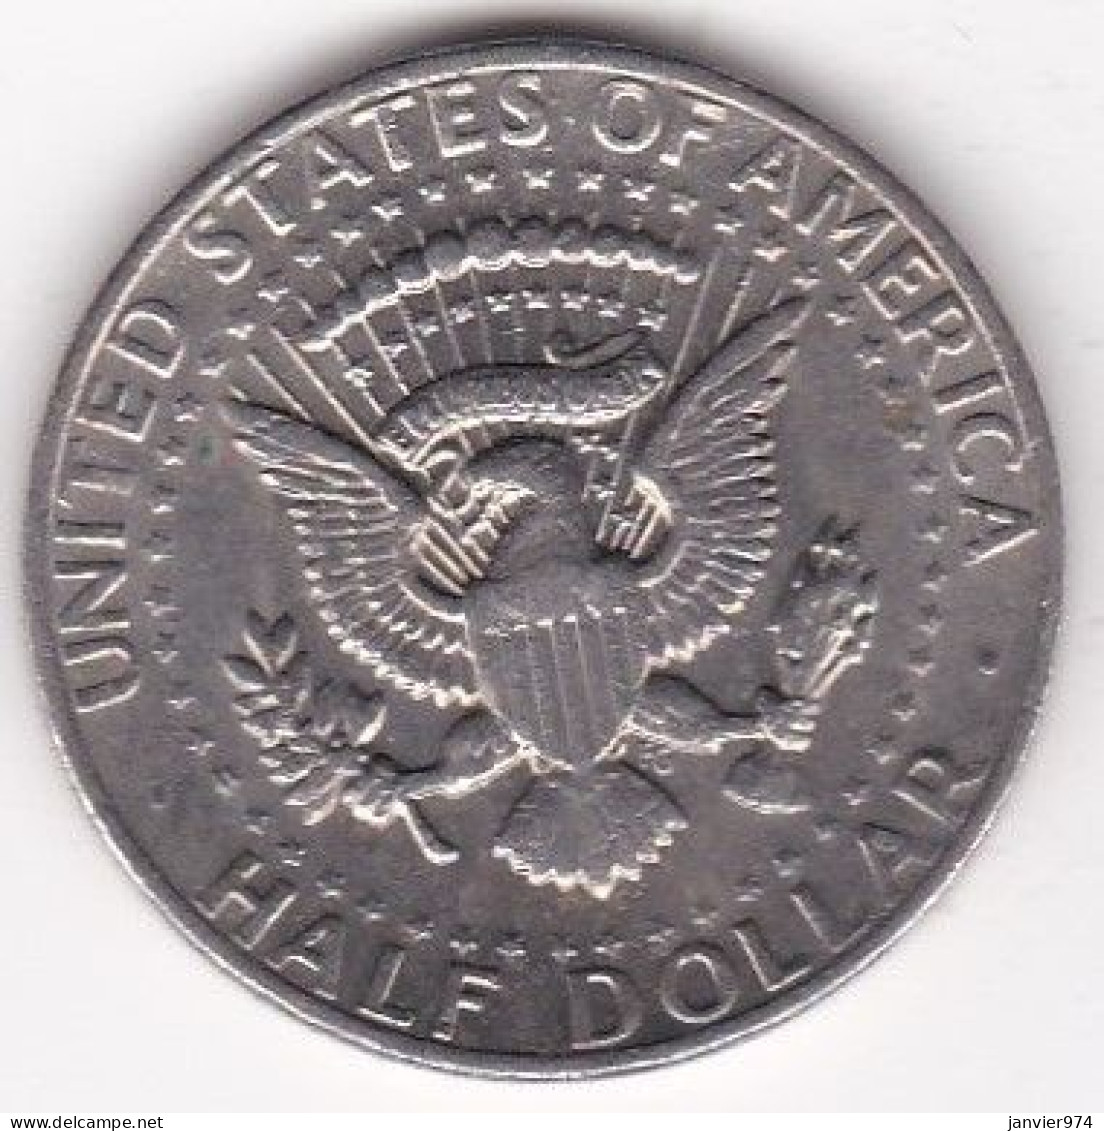 Etats Unis Half Dollar 1972,  Kennedy, En Cuivre Plaqué Cupronickel, KM# 202b - 1964-…: Kennedy